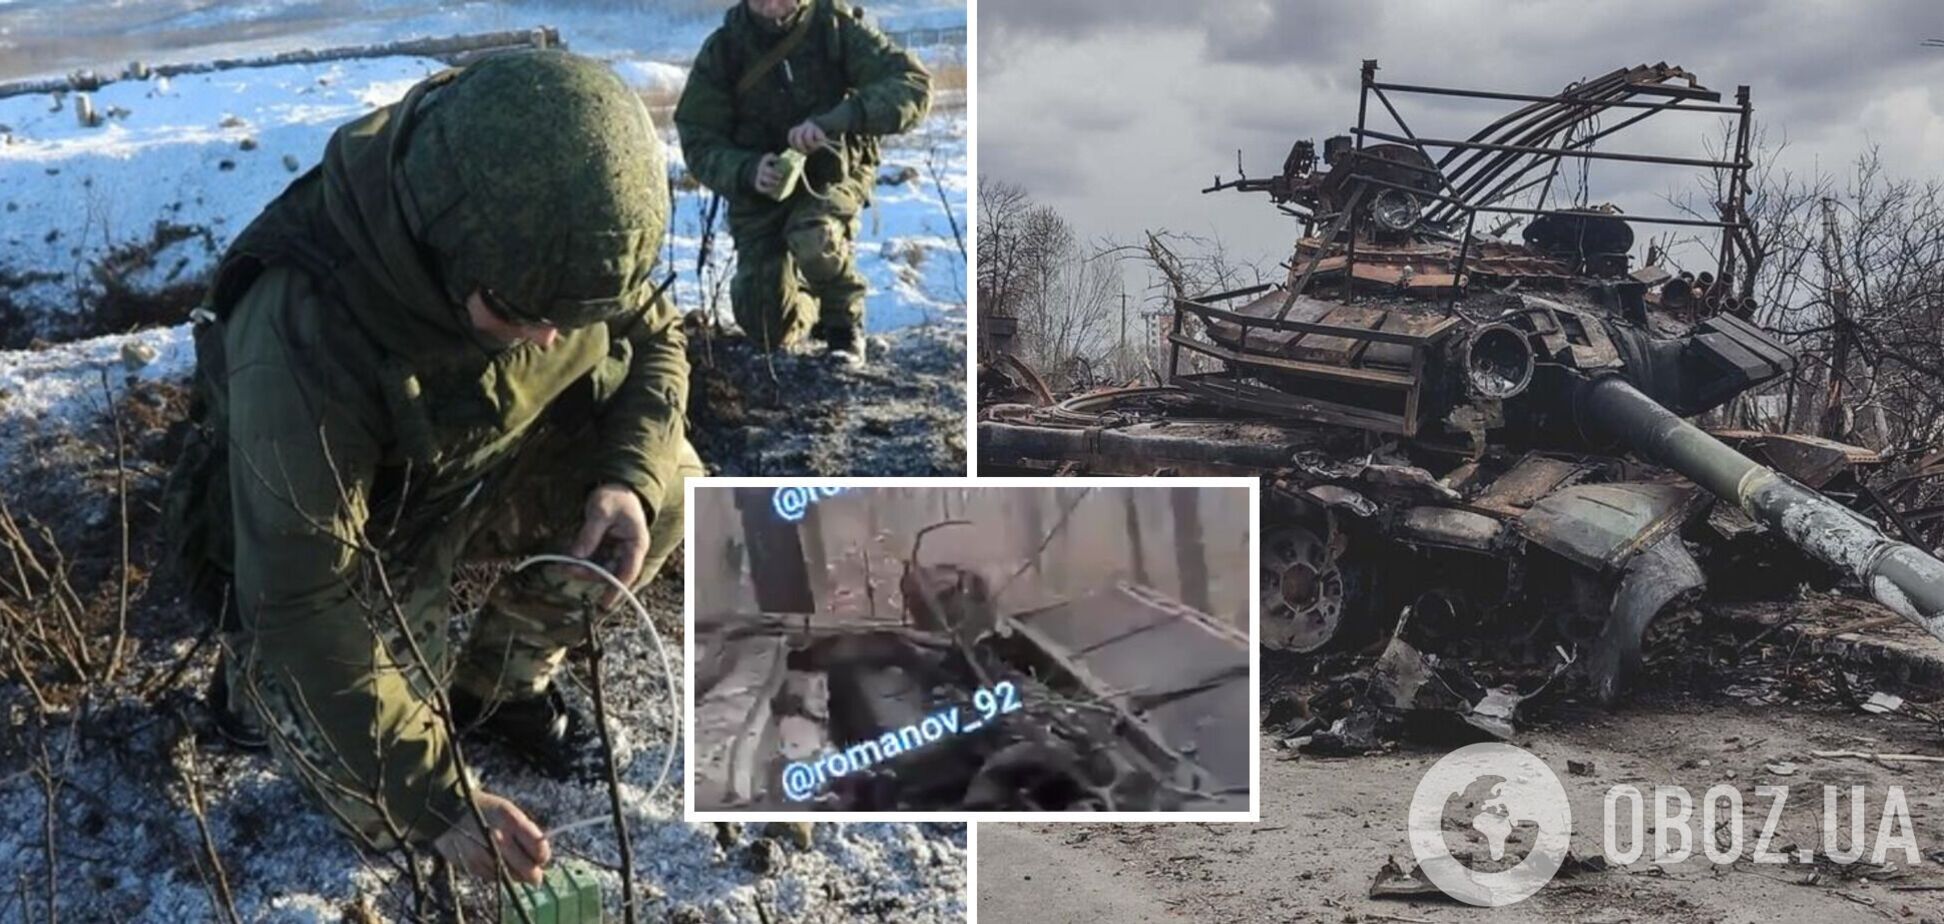 'Почему у нас нет такого вооружения?' Российский оккупант показал результат работы украинских дронов. Видео